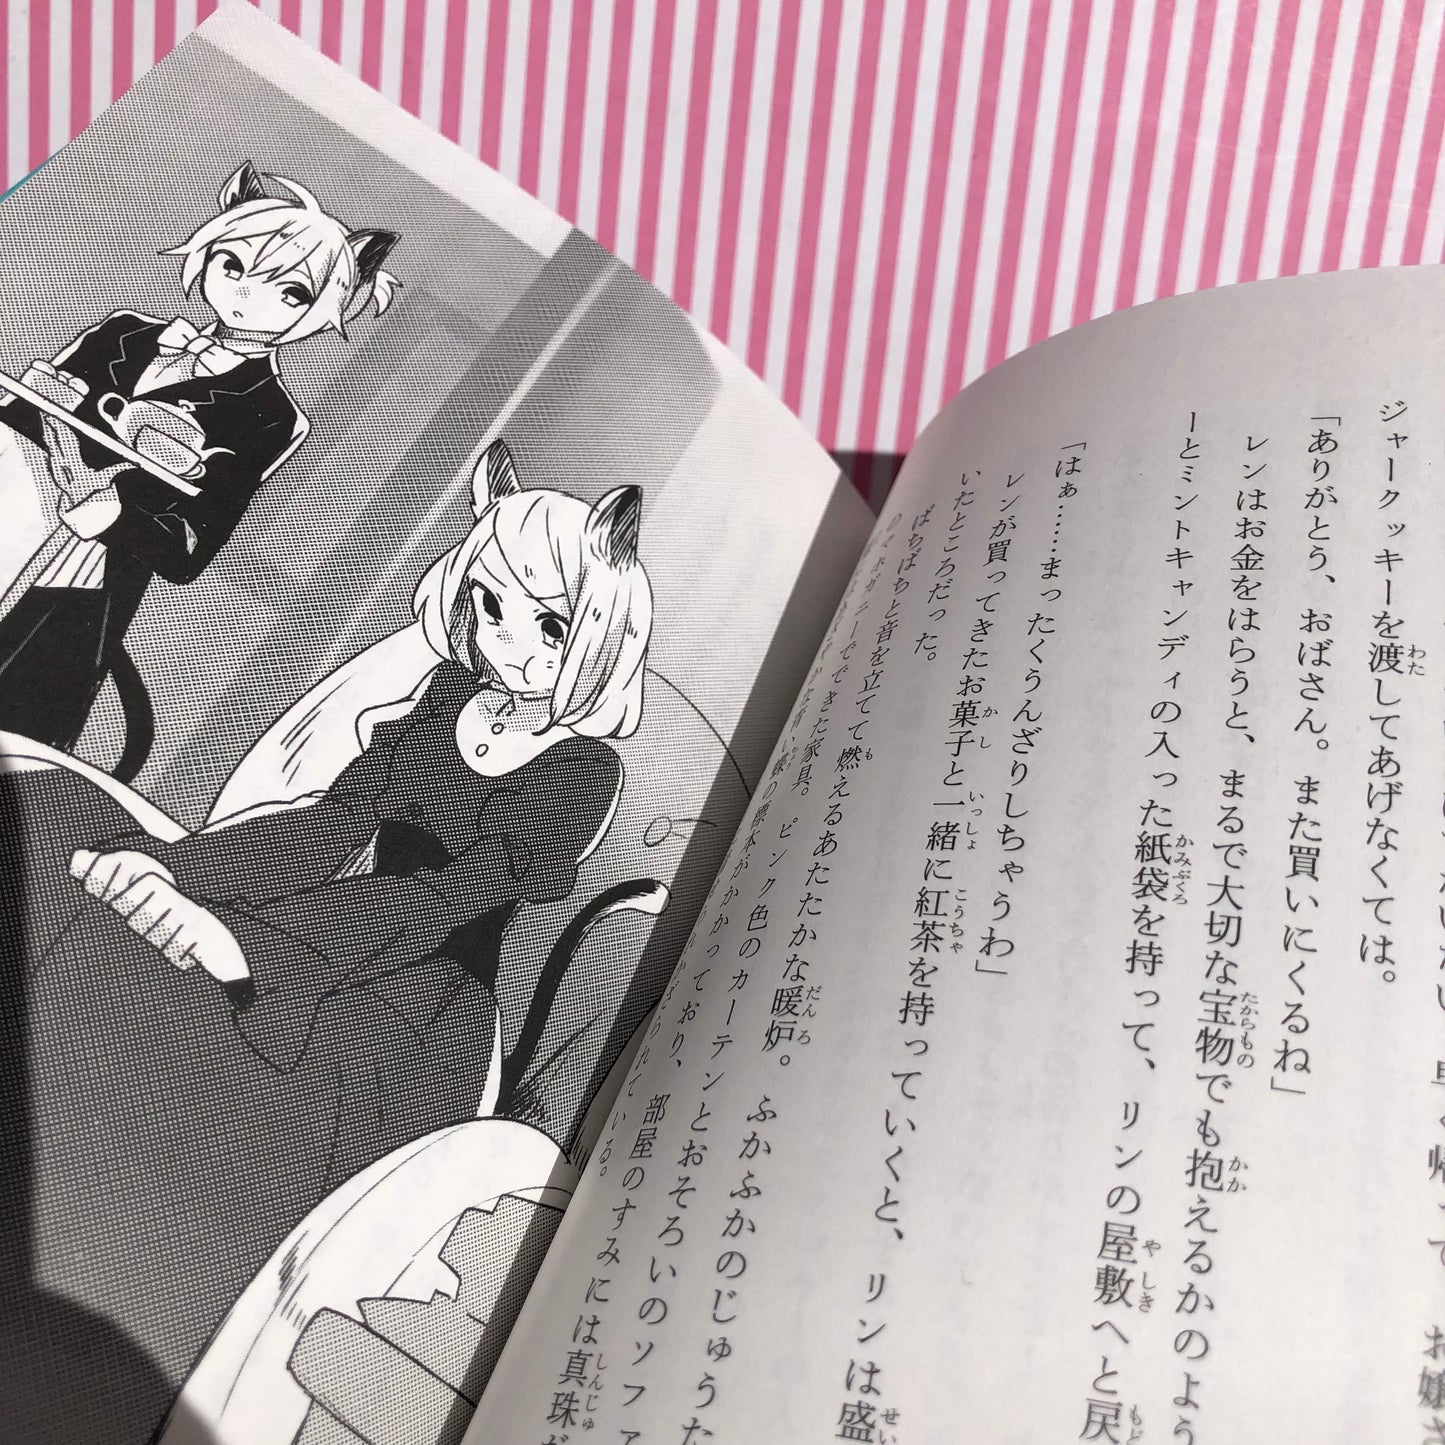 Light Novel Tama Kaito pita ando jeni: Hatsune miku poketto Irasutoreta. Ren Minami